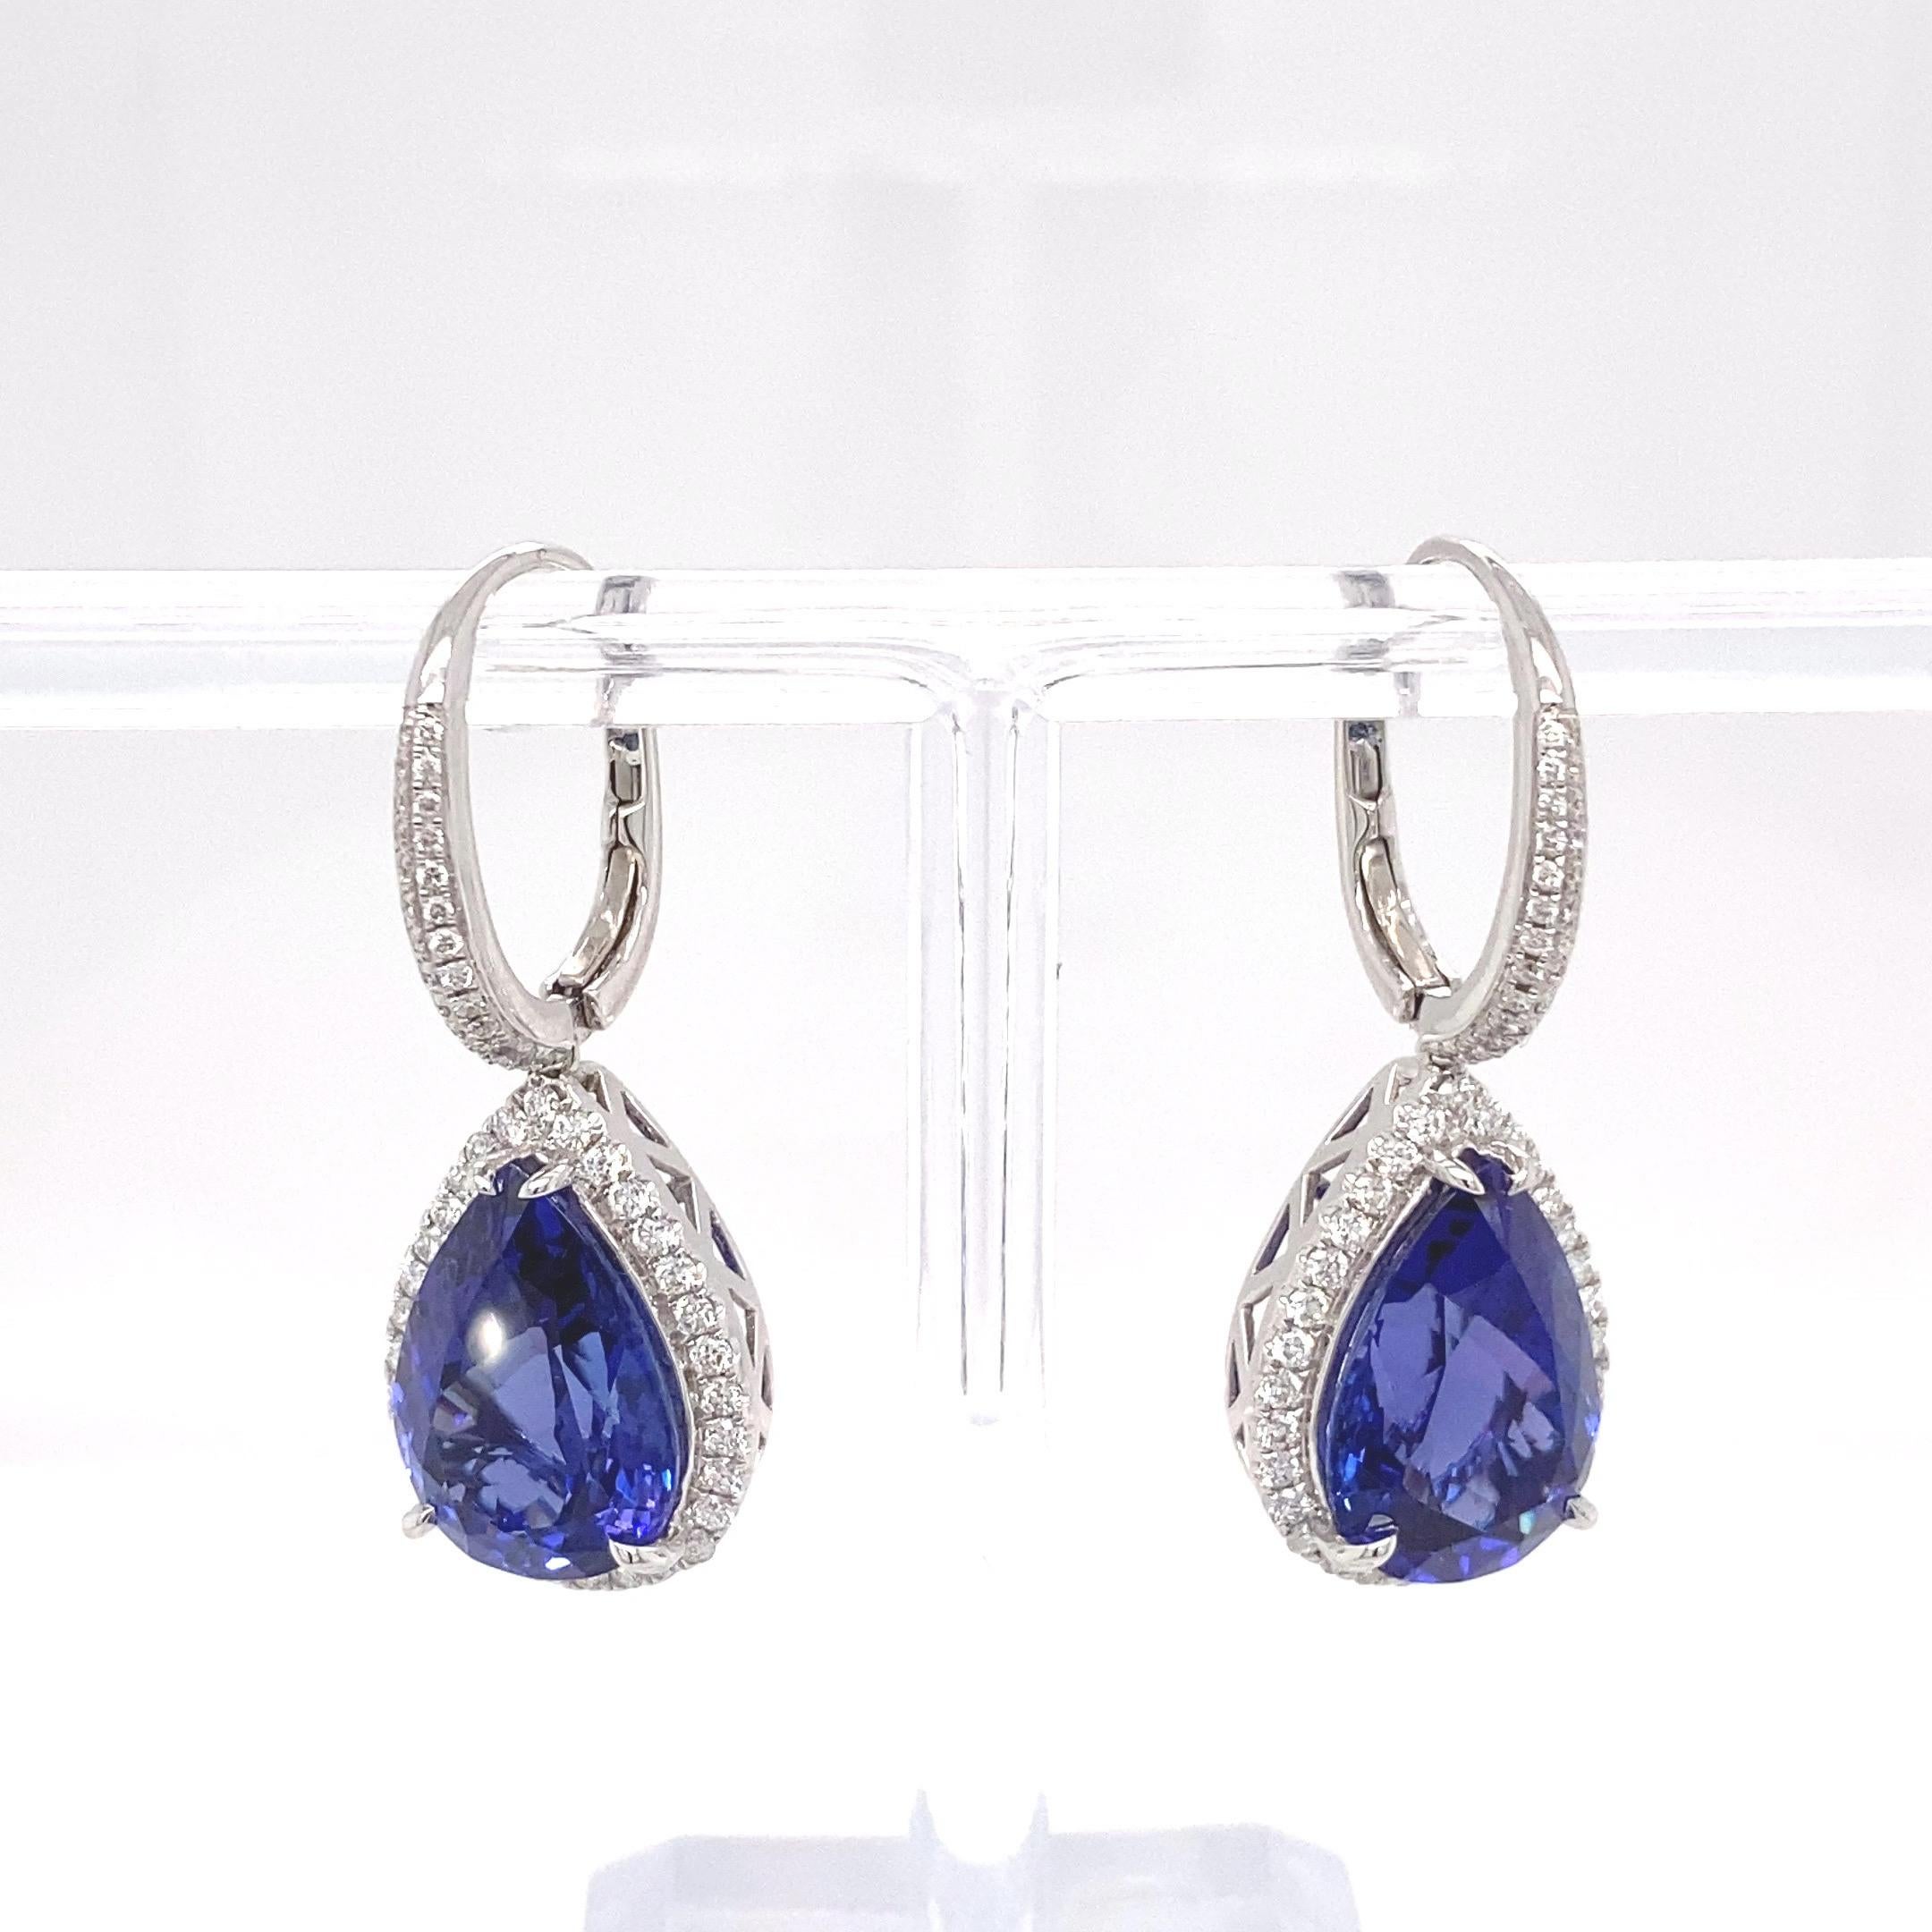 Diese eleganten Ohrringe haben 16,51 Karat Birne  Form eines Tansanits, der von einem Halo aus weißen Diamanten umgeben ist und auch auf der Glocke Diamantakzente aufweist. Die lebendige violette Farbe Tansanit ist sorgfältig mit Detailarbeit von